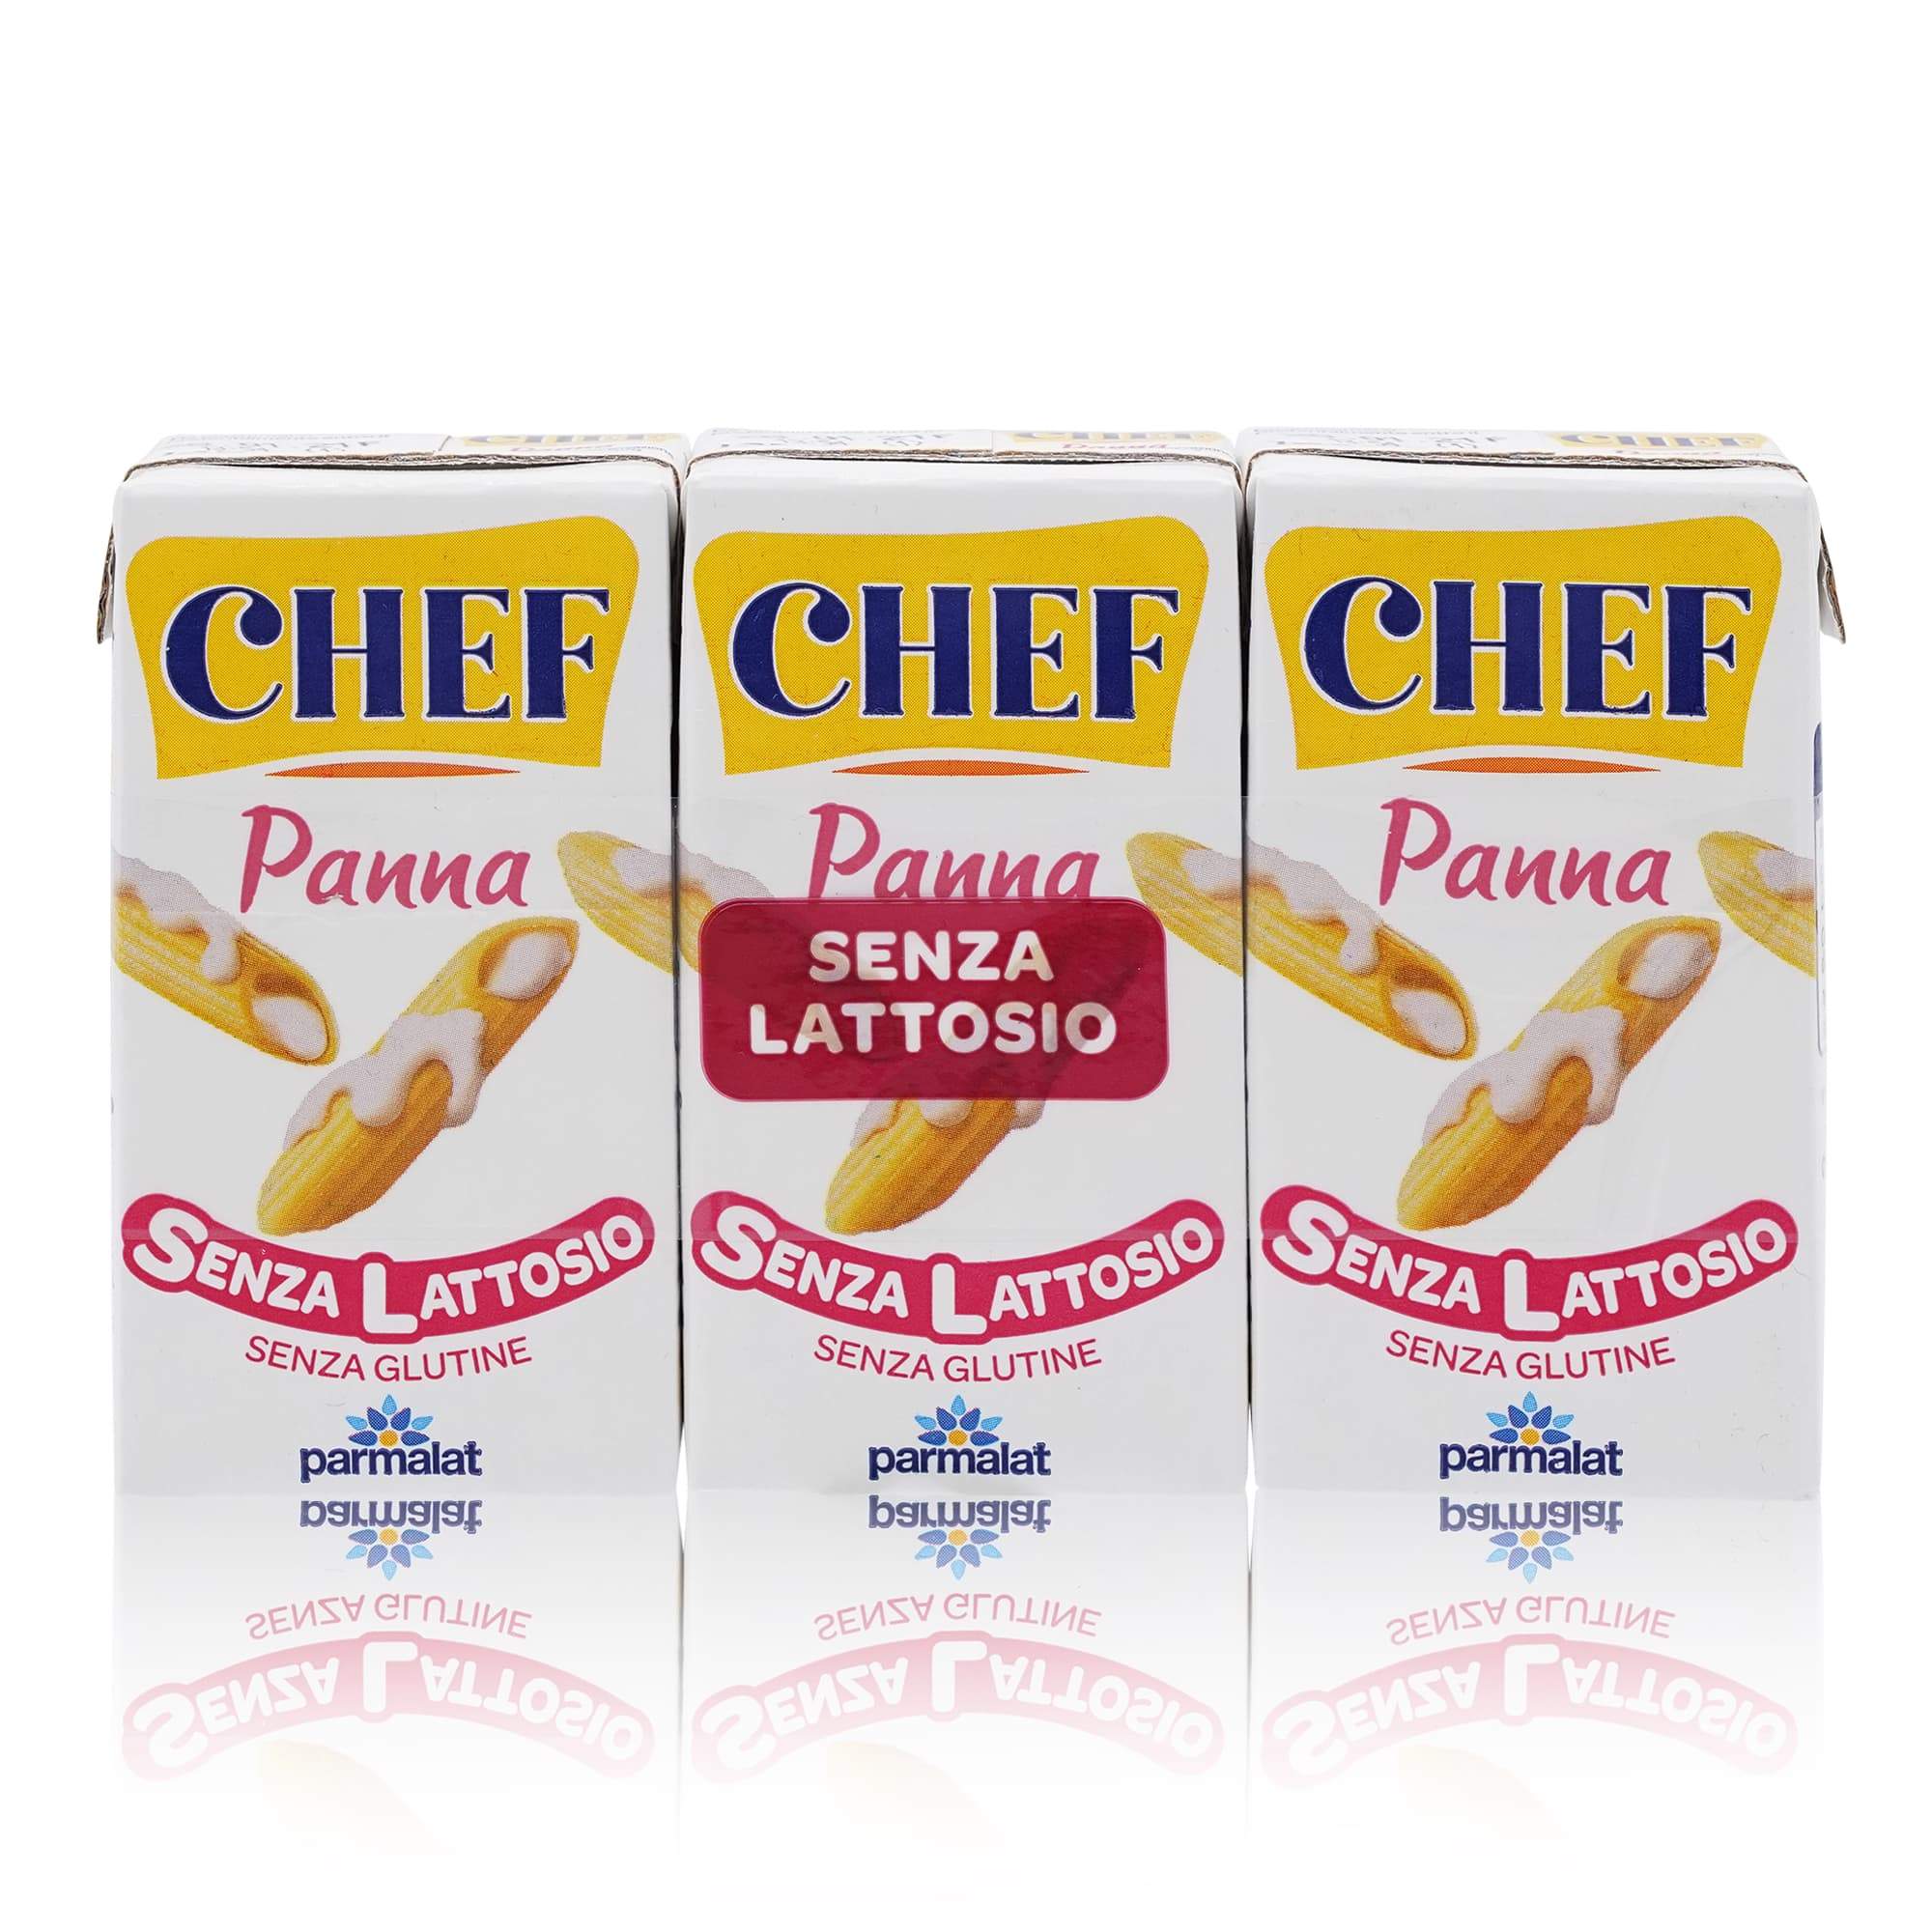 CHEF Panna senza lattosio – Sahne Laktosefrei - 0,375l - italienisch-einkaufen.de